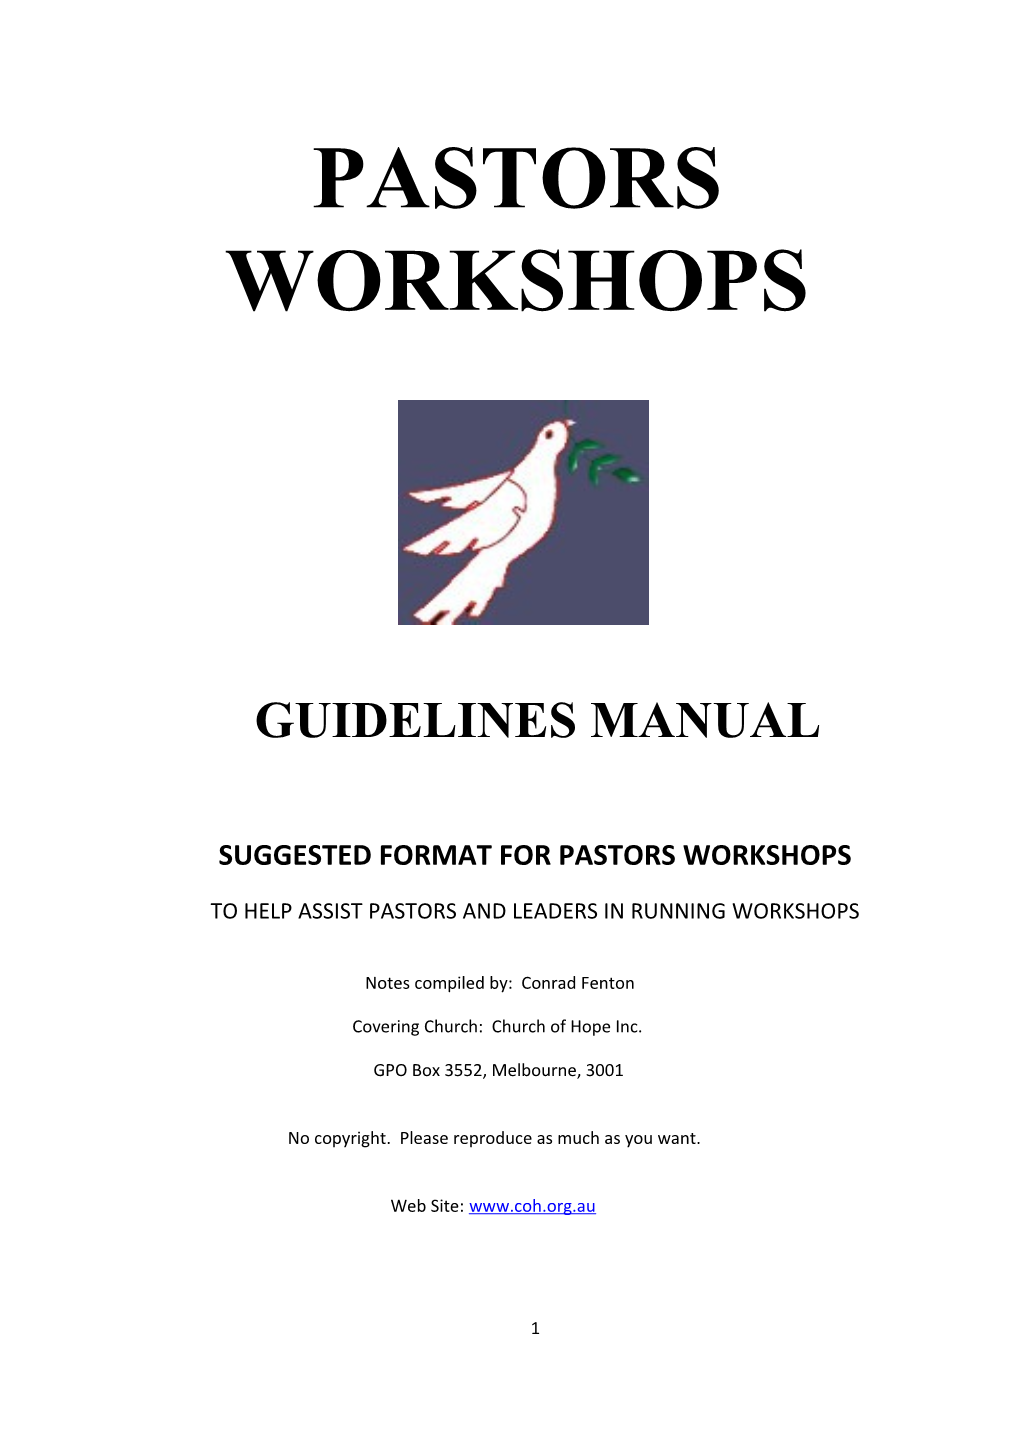 Suggested Format for Pastors Workshops